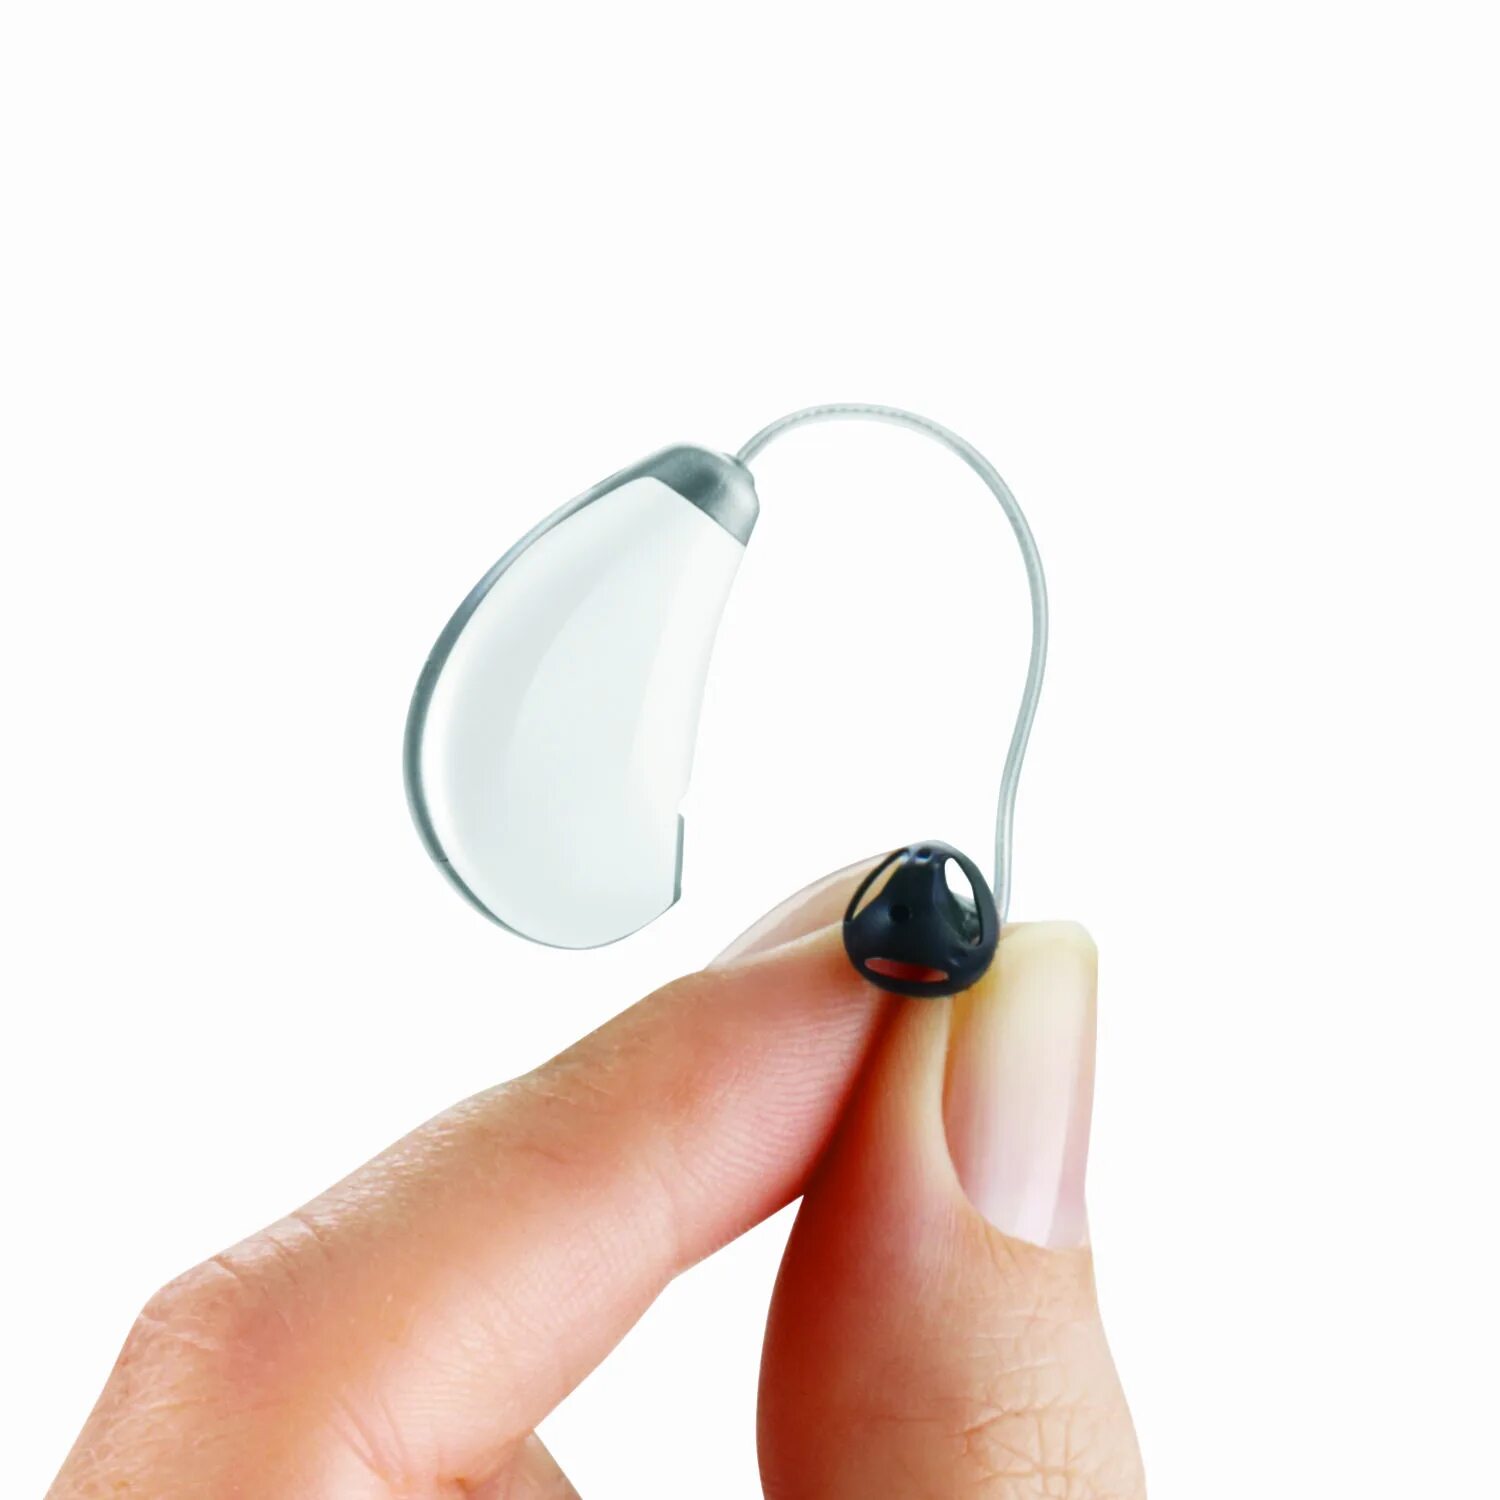 Слуховой аппарат для слабослышащих. Внутриканальный слуховой аппарат Widex Mini s 270. Слуховой аппарат Tango 6m. Cros,NFM c090 слуховой аппарат. Слуховой аппарат Pure 2px.